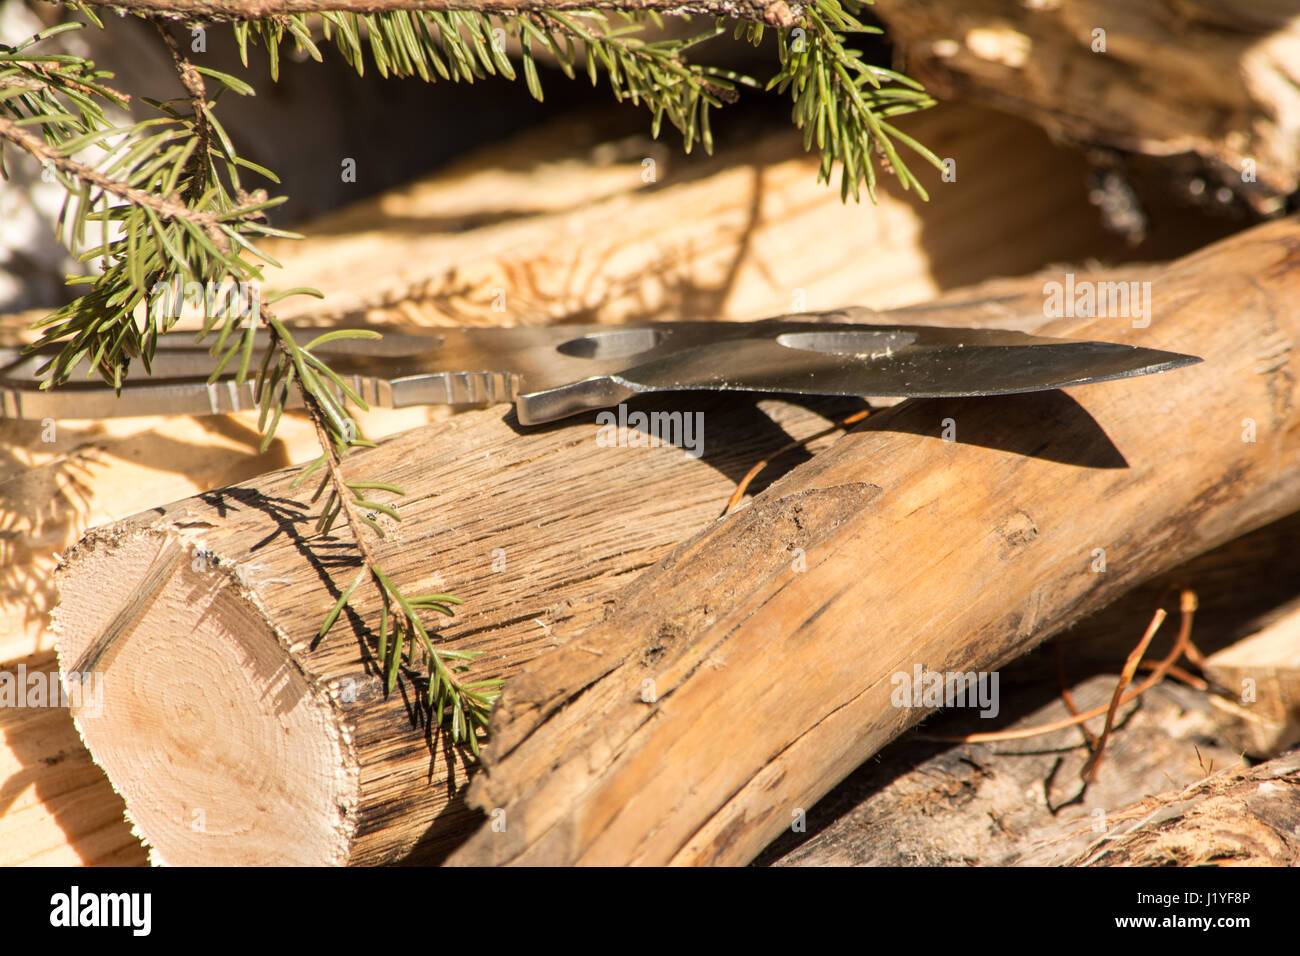 Acciaio coltello da caccia circondata da legno e alberelli scenario naturale. Foto Stock